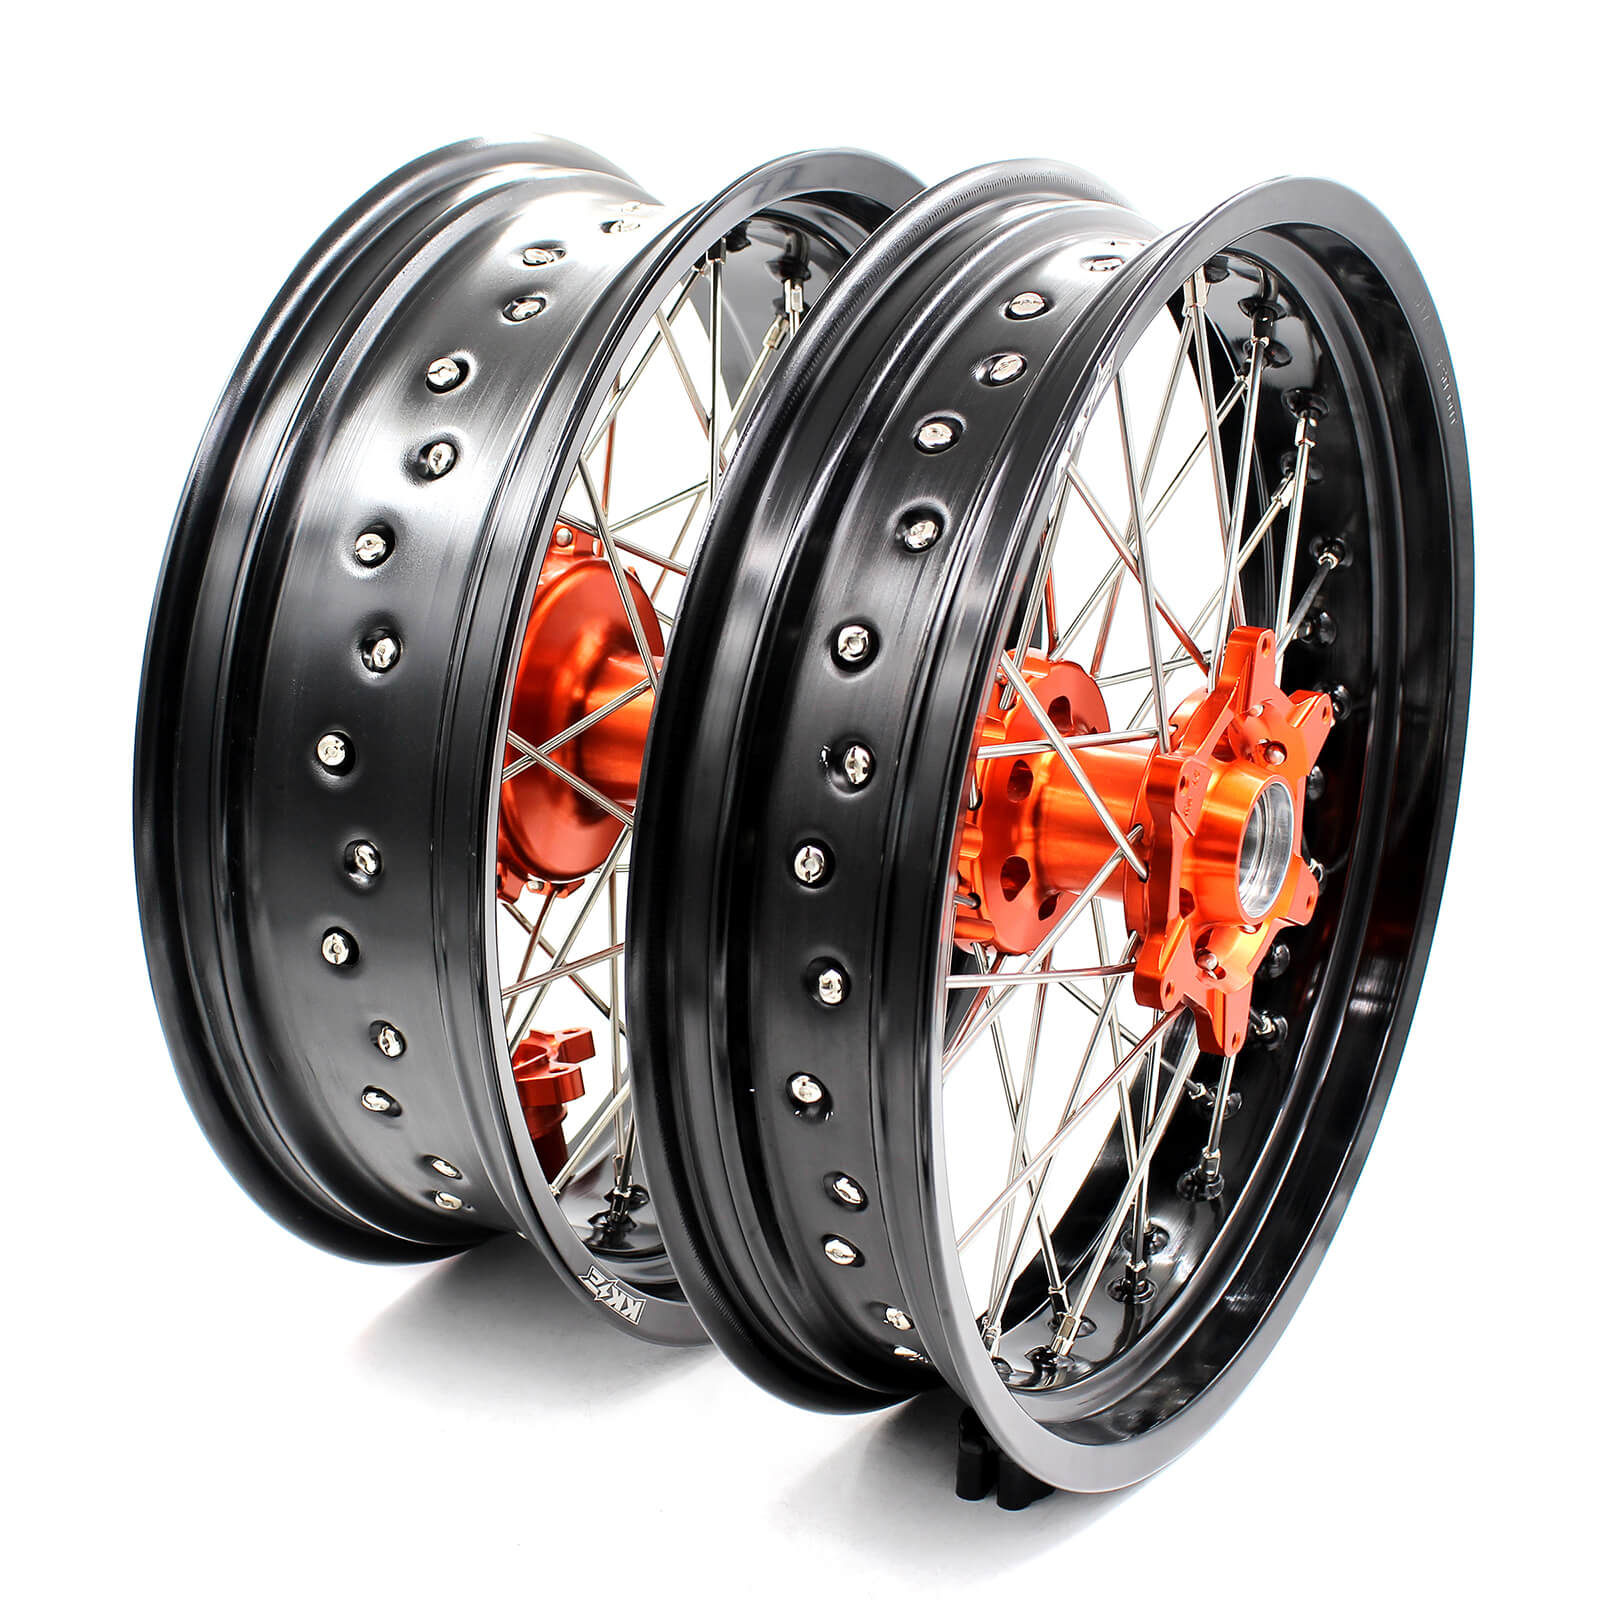 KKE 3.5*17 / 4.5*17 CUSH Drive Supermoto Rims for KTM 625 SMC 640 LC4 660  SMC Orange&Black